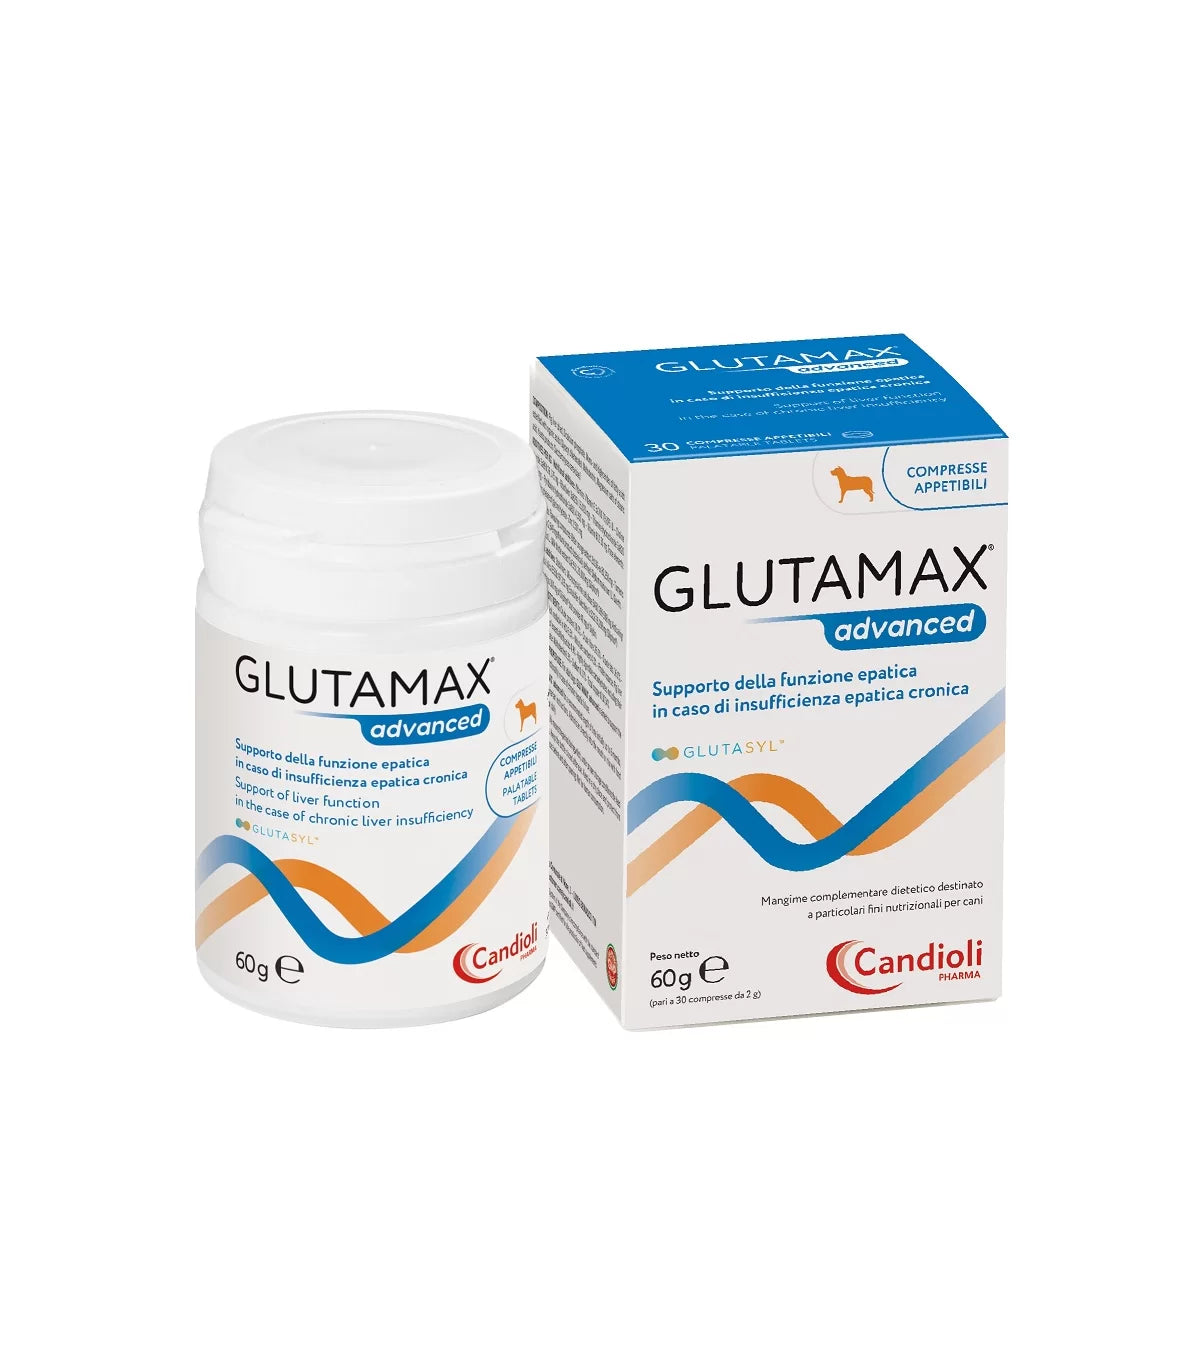 GLUTAMAX ADVANCED (30 cpr) – Contro l’insufficienza epatica